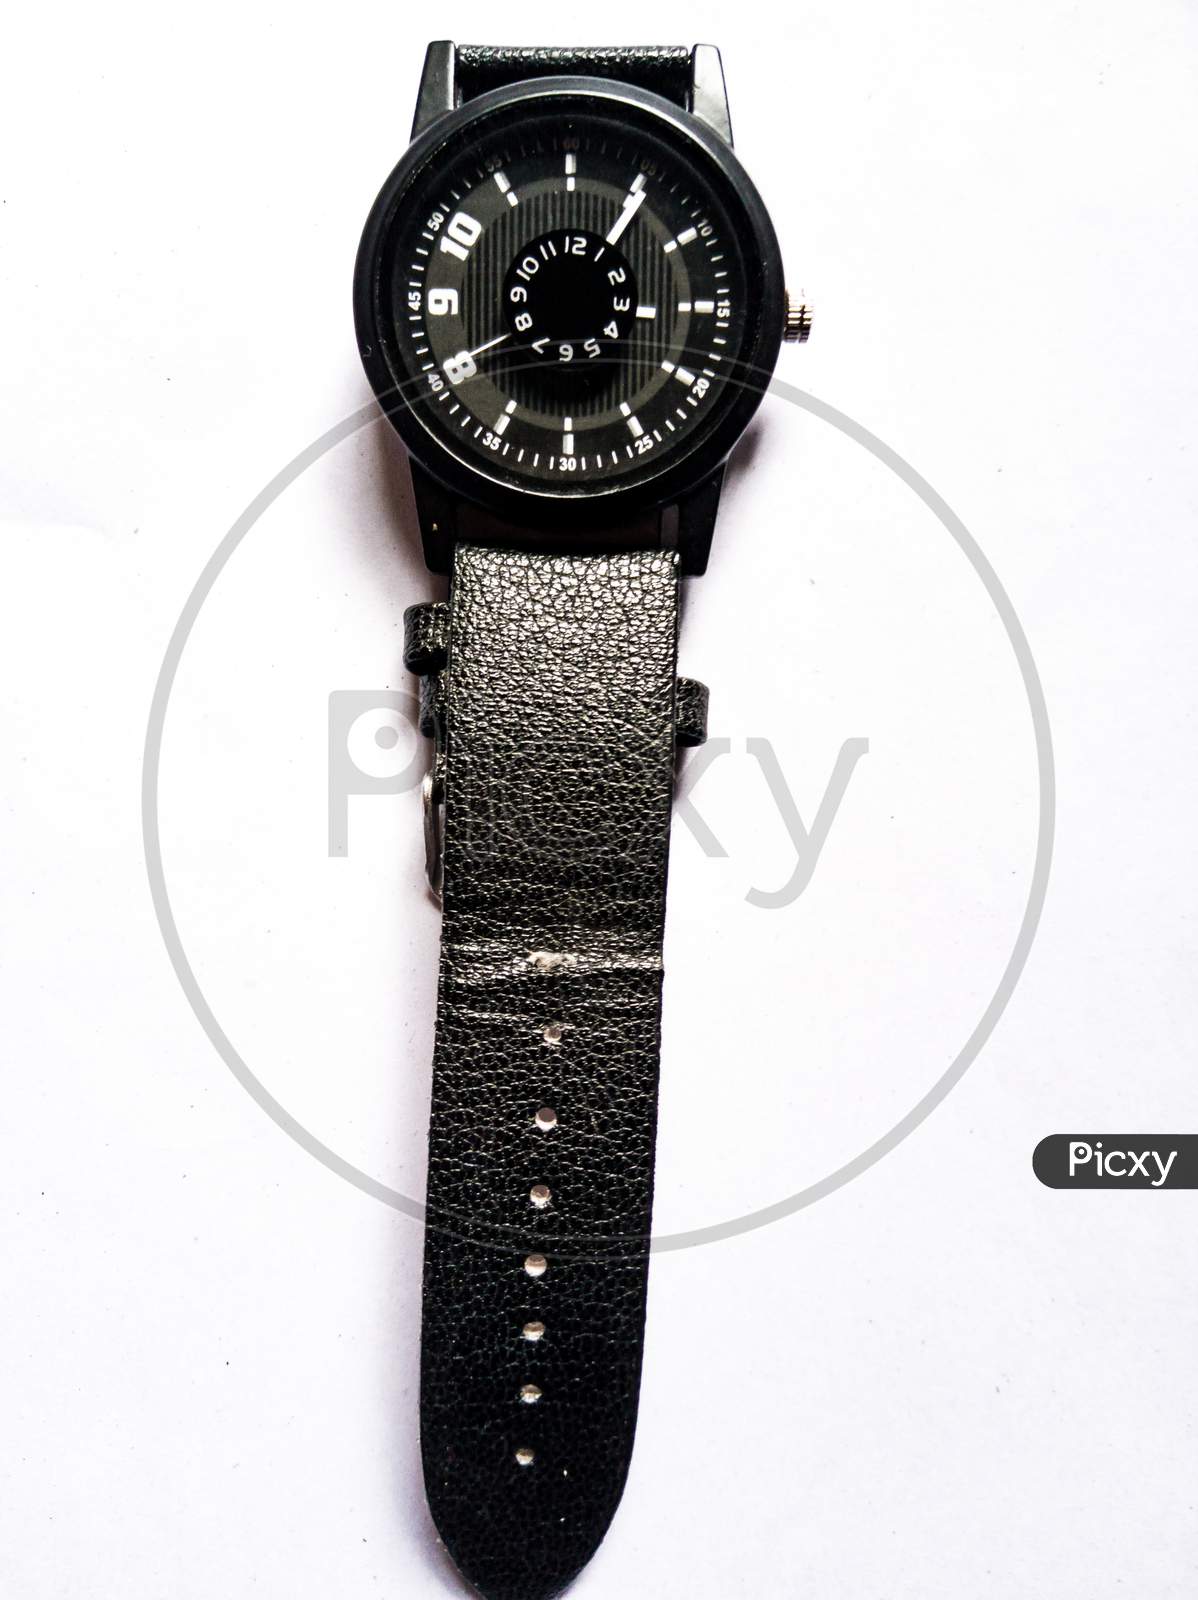 Black wrist watch on white background